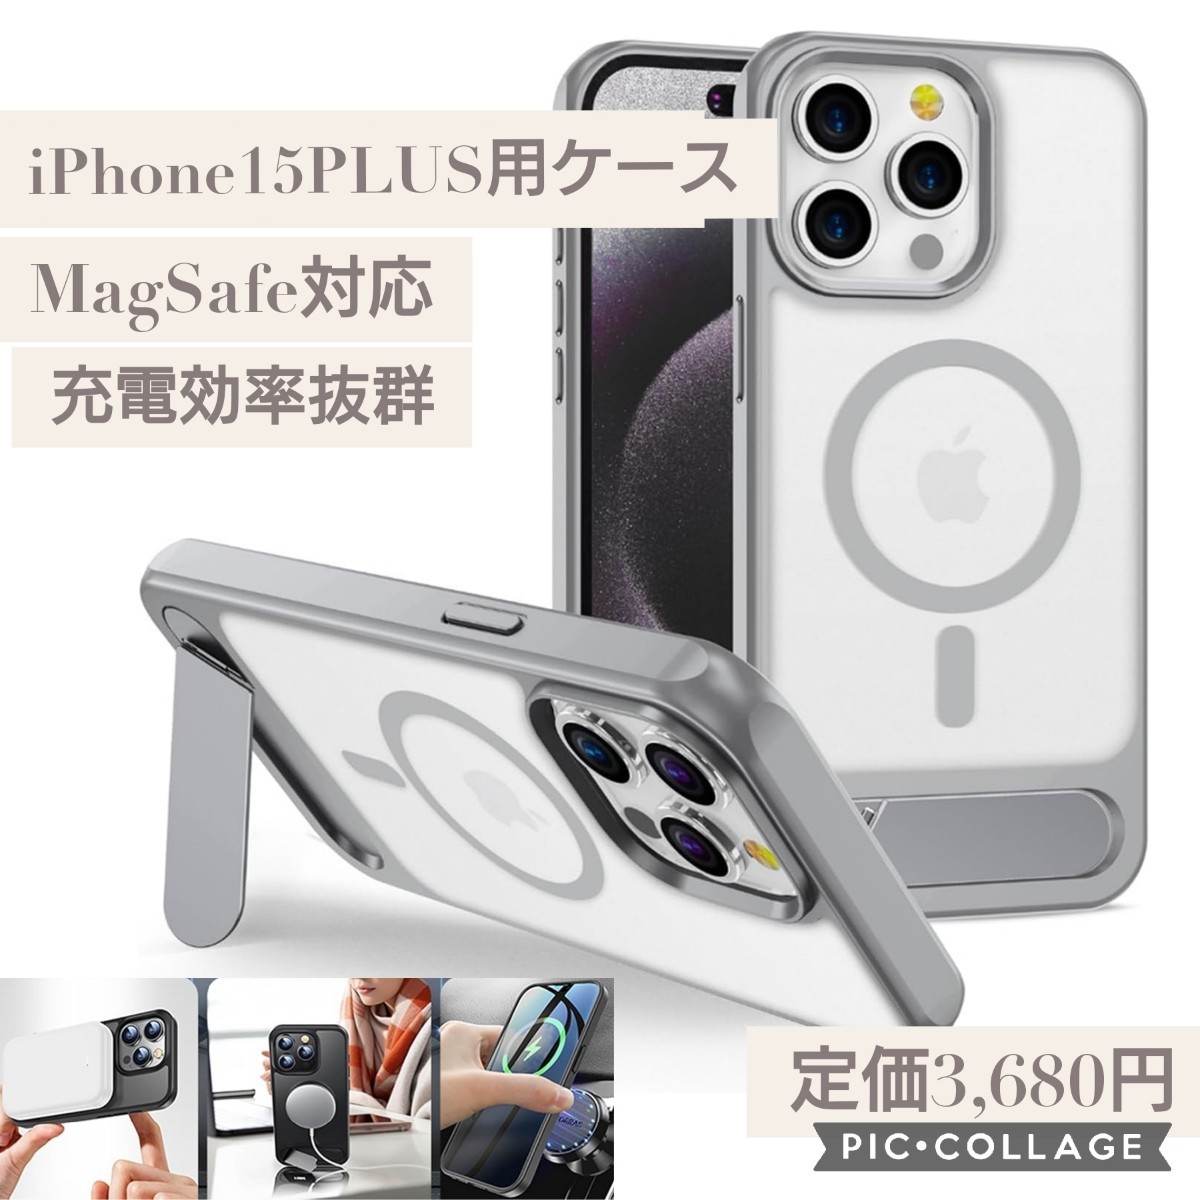 新品未開封☆定価3,680円 iPhone15 plus 専用ケース X1タイプ MagSafe対応 透明 耐衝撃 ワイヤレス充電 ストラップホール付き 磁気ケース_画像1